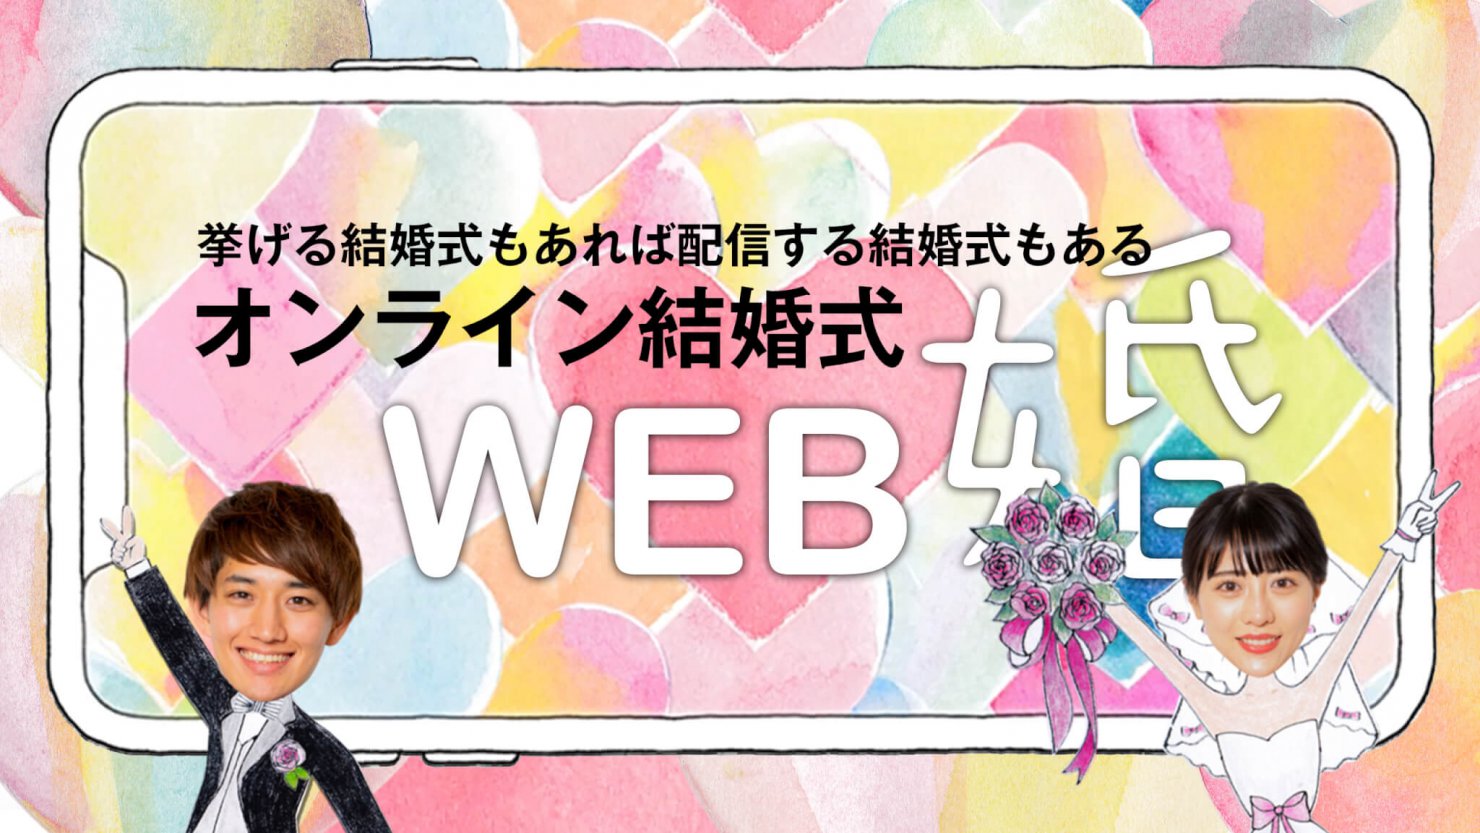 オンライン結婚式 Web婚 を朝日新聞で紹介いただきました